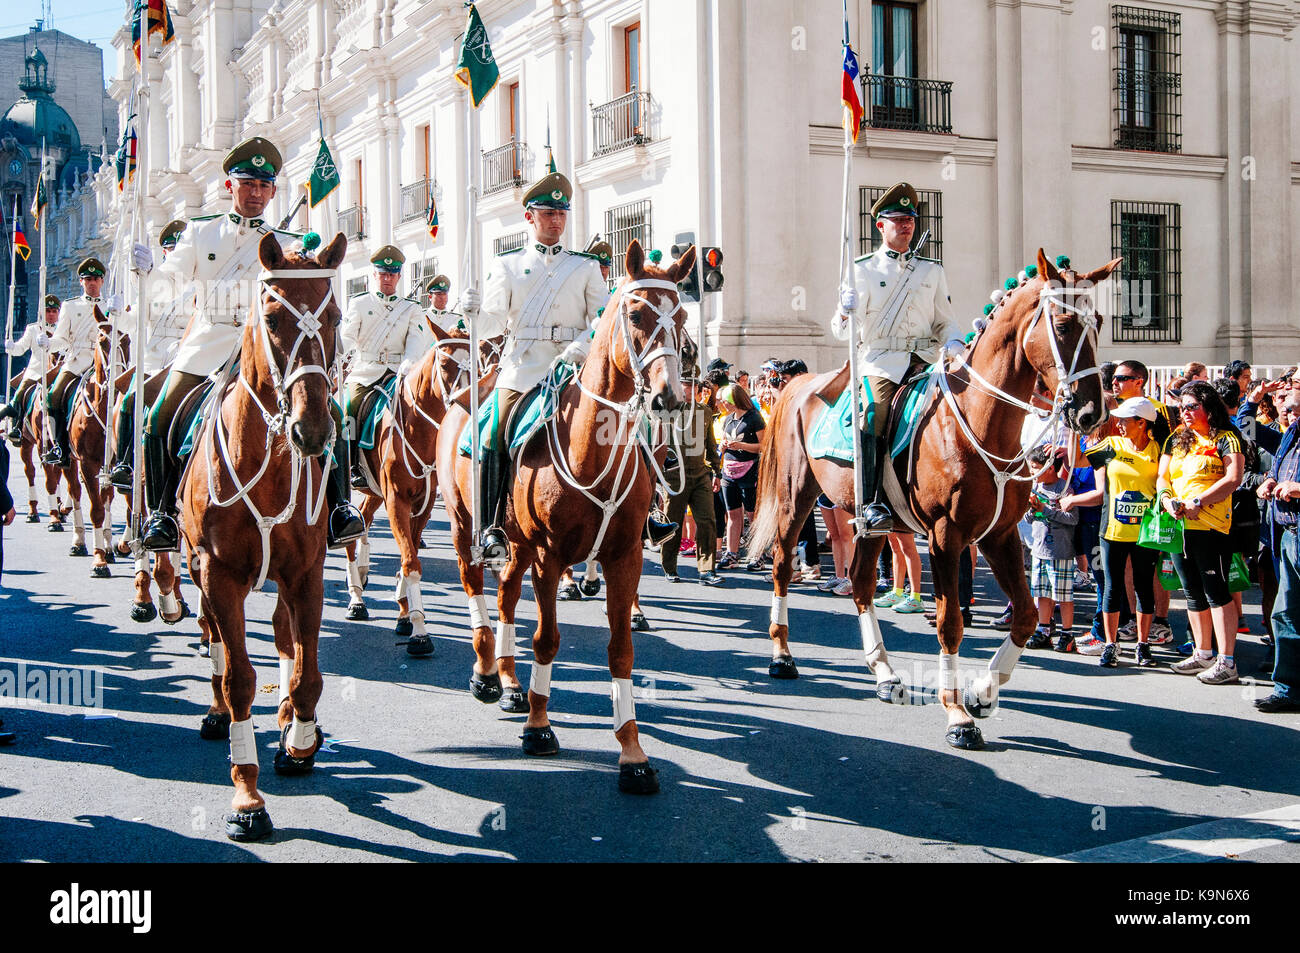 Santiago, Chili, 07 avril 2013.. carabiniers montés au cours de parade dans la ville. Banque D'Images